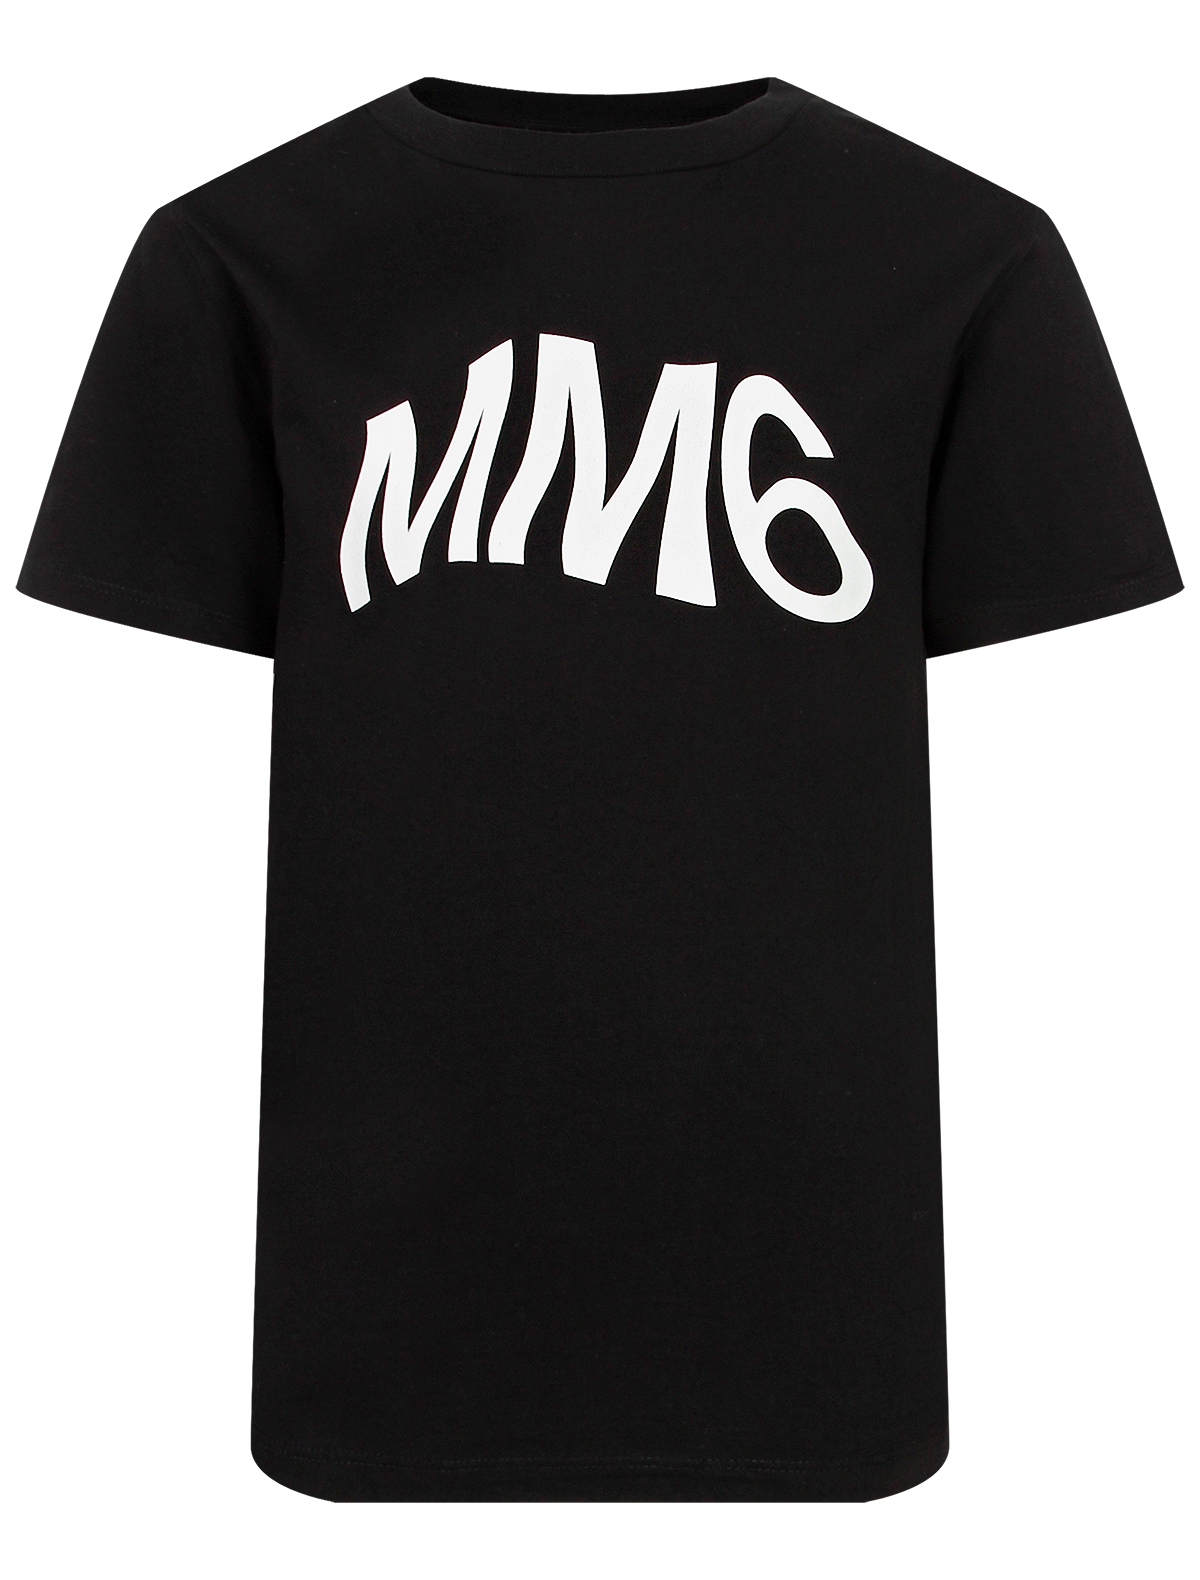 Футболка mm. Черная футболка m&m's. Футболка mm Vison. Майка мм2.